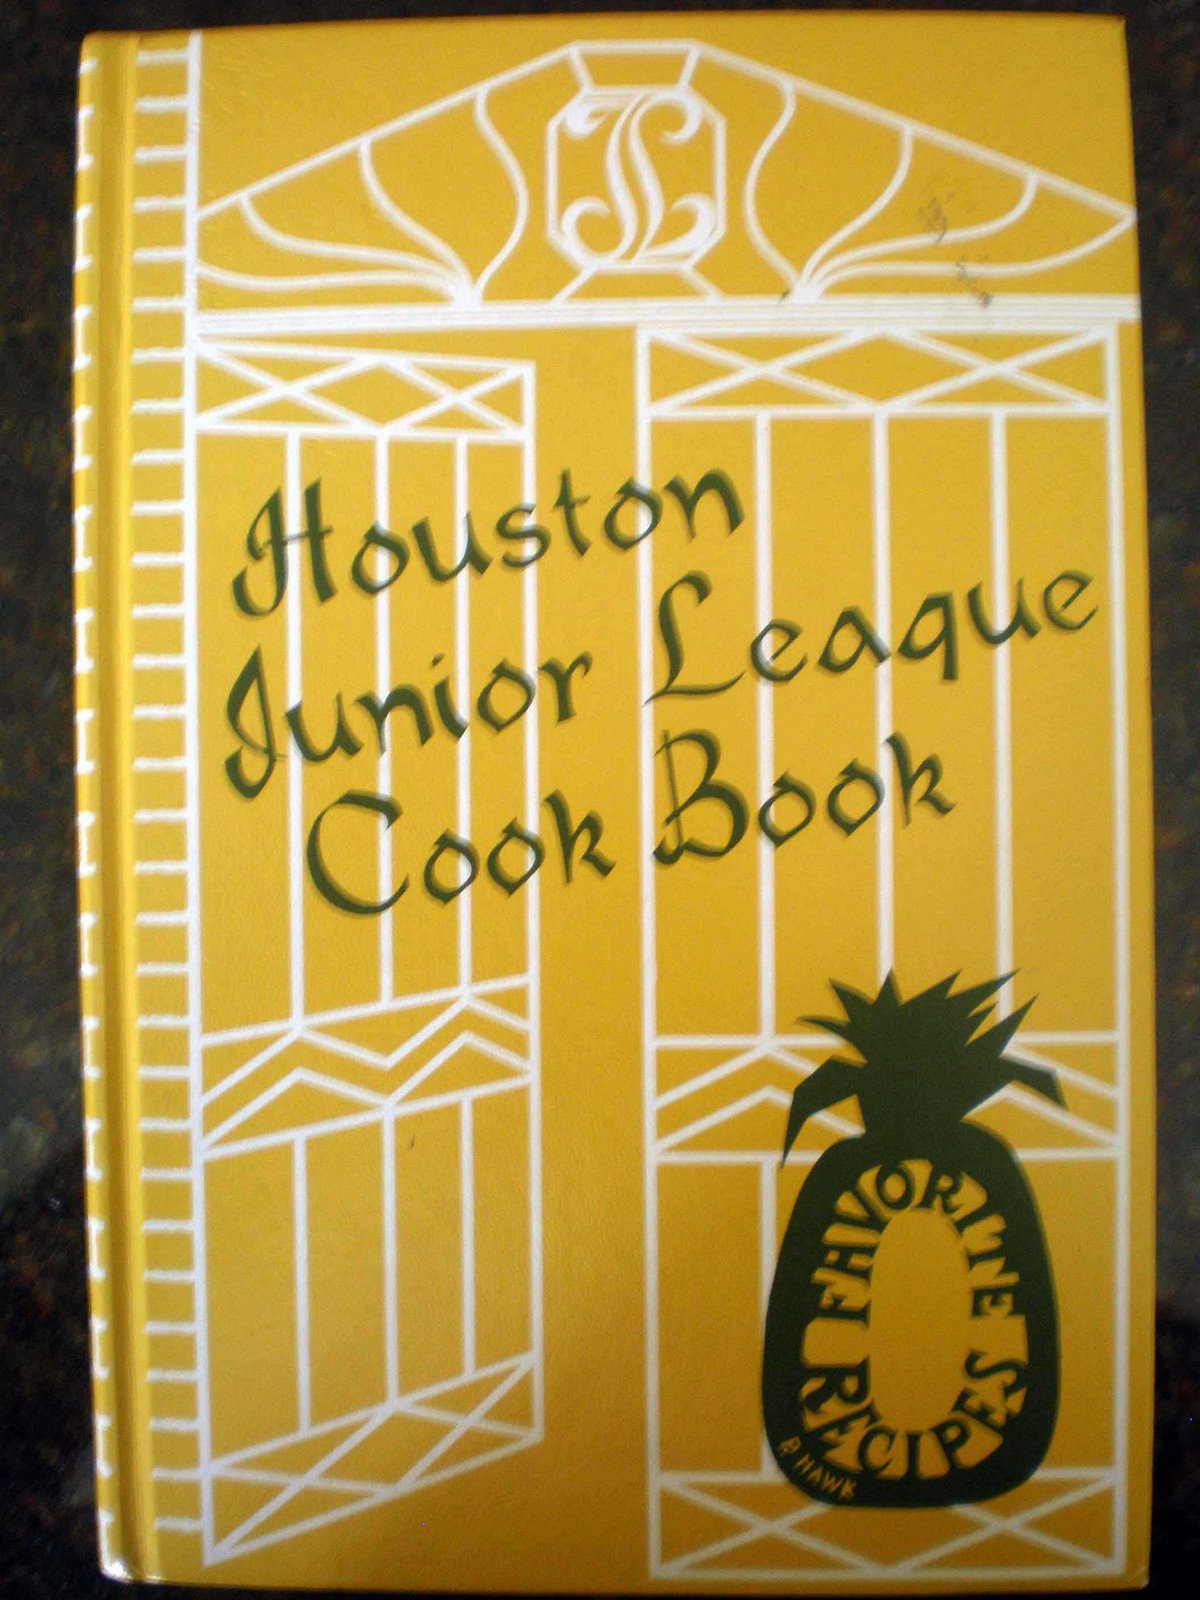 [jr-league-cookbook2.jpg]